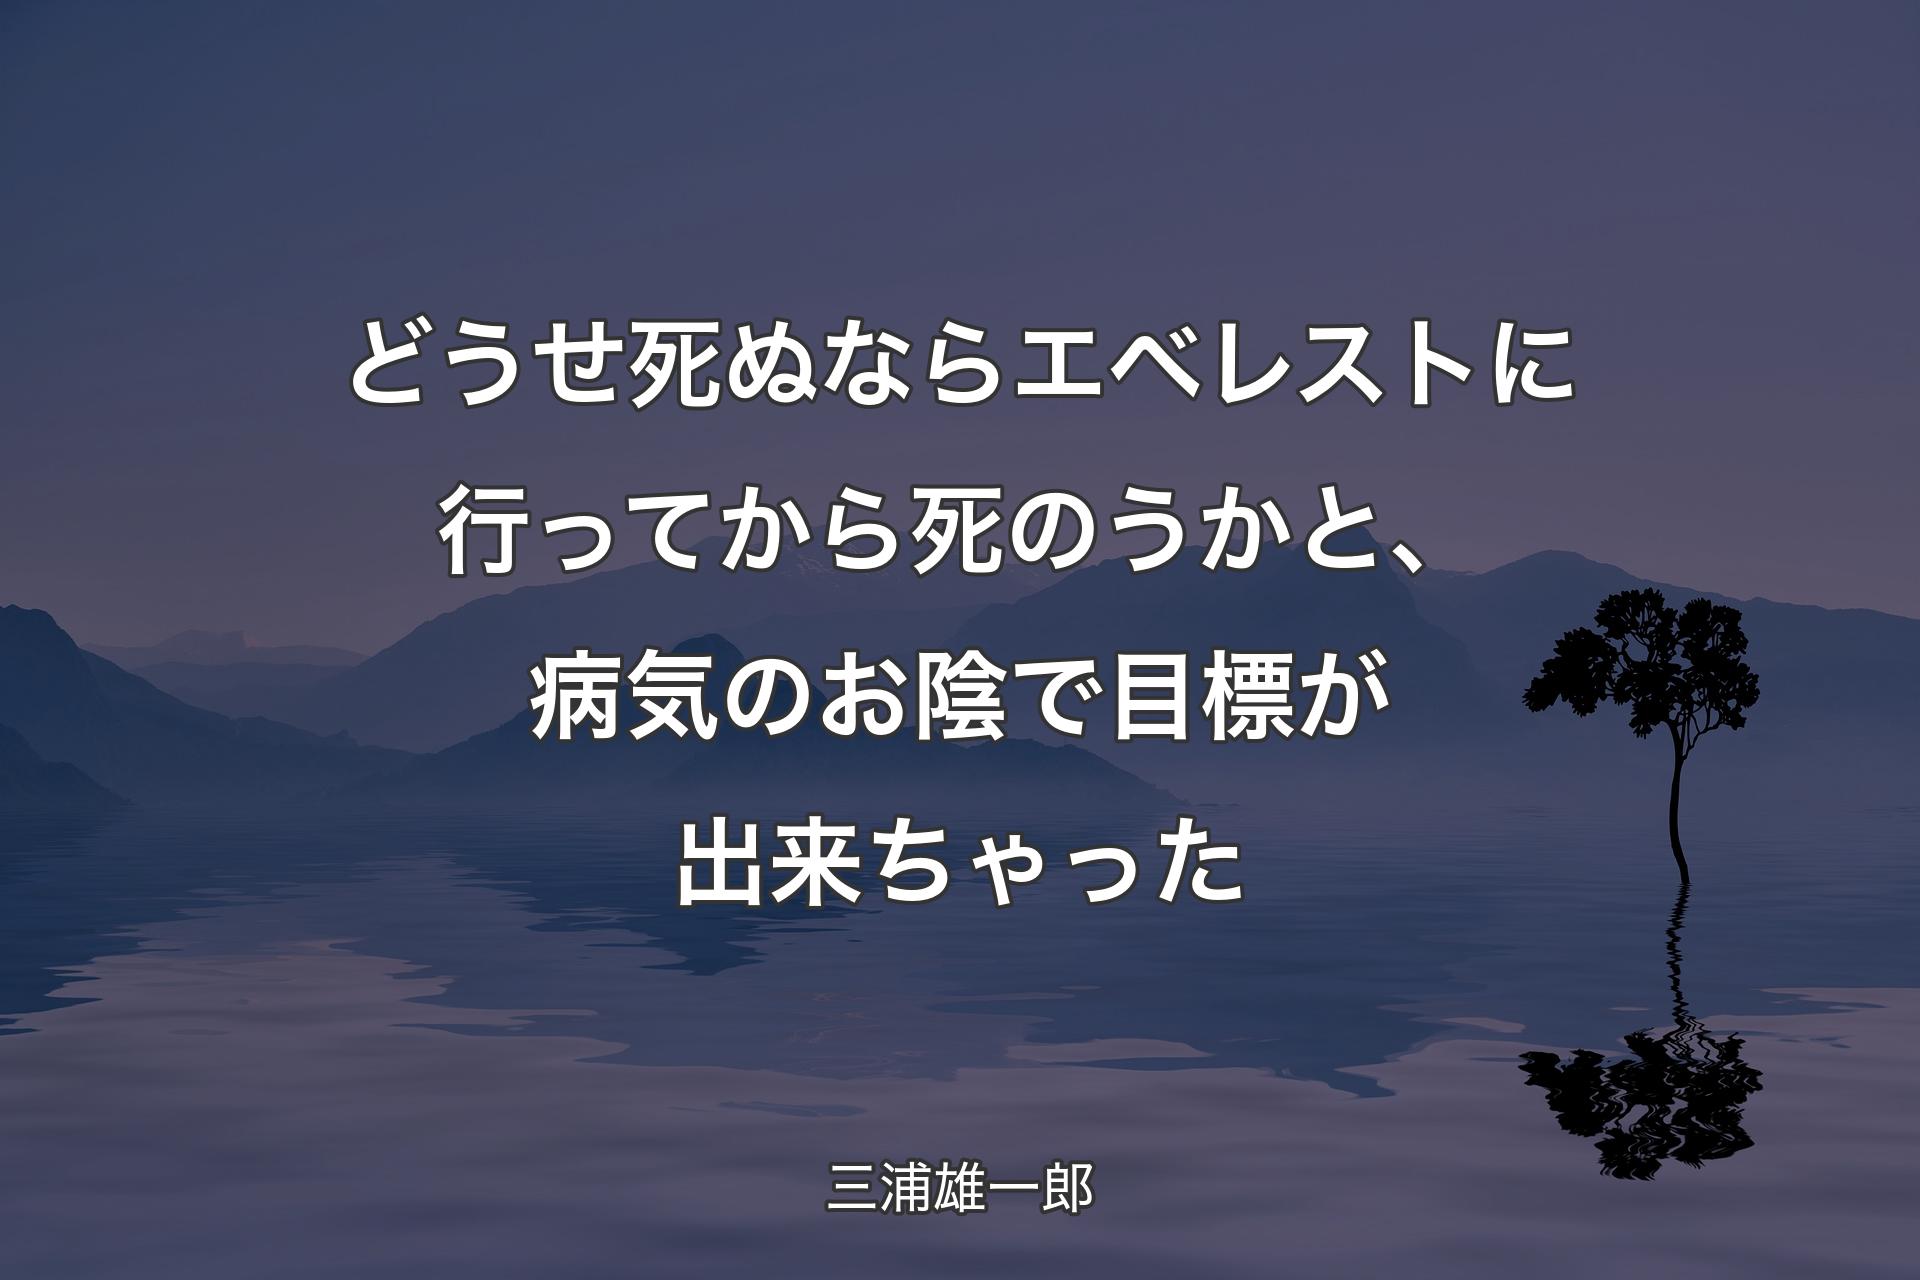 【背景4】どうせ死ぬならエベレストに行ってから死のうかと、病気のお陰で目標が出来ちゃった - 三浦雄一郎